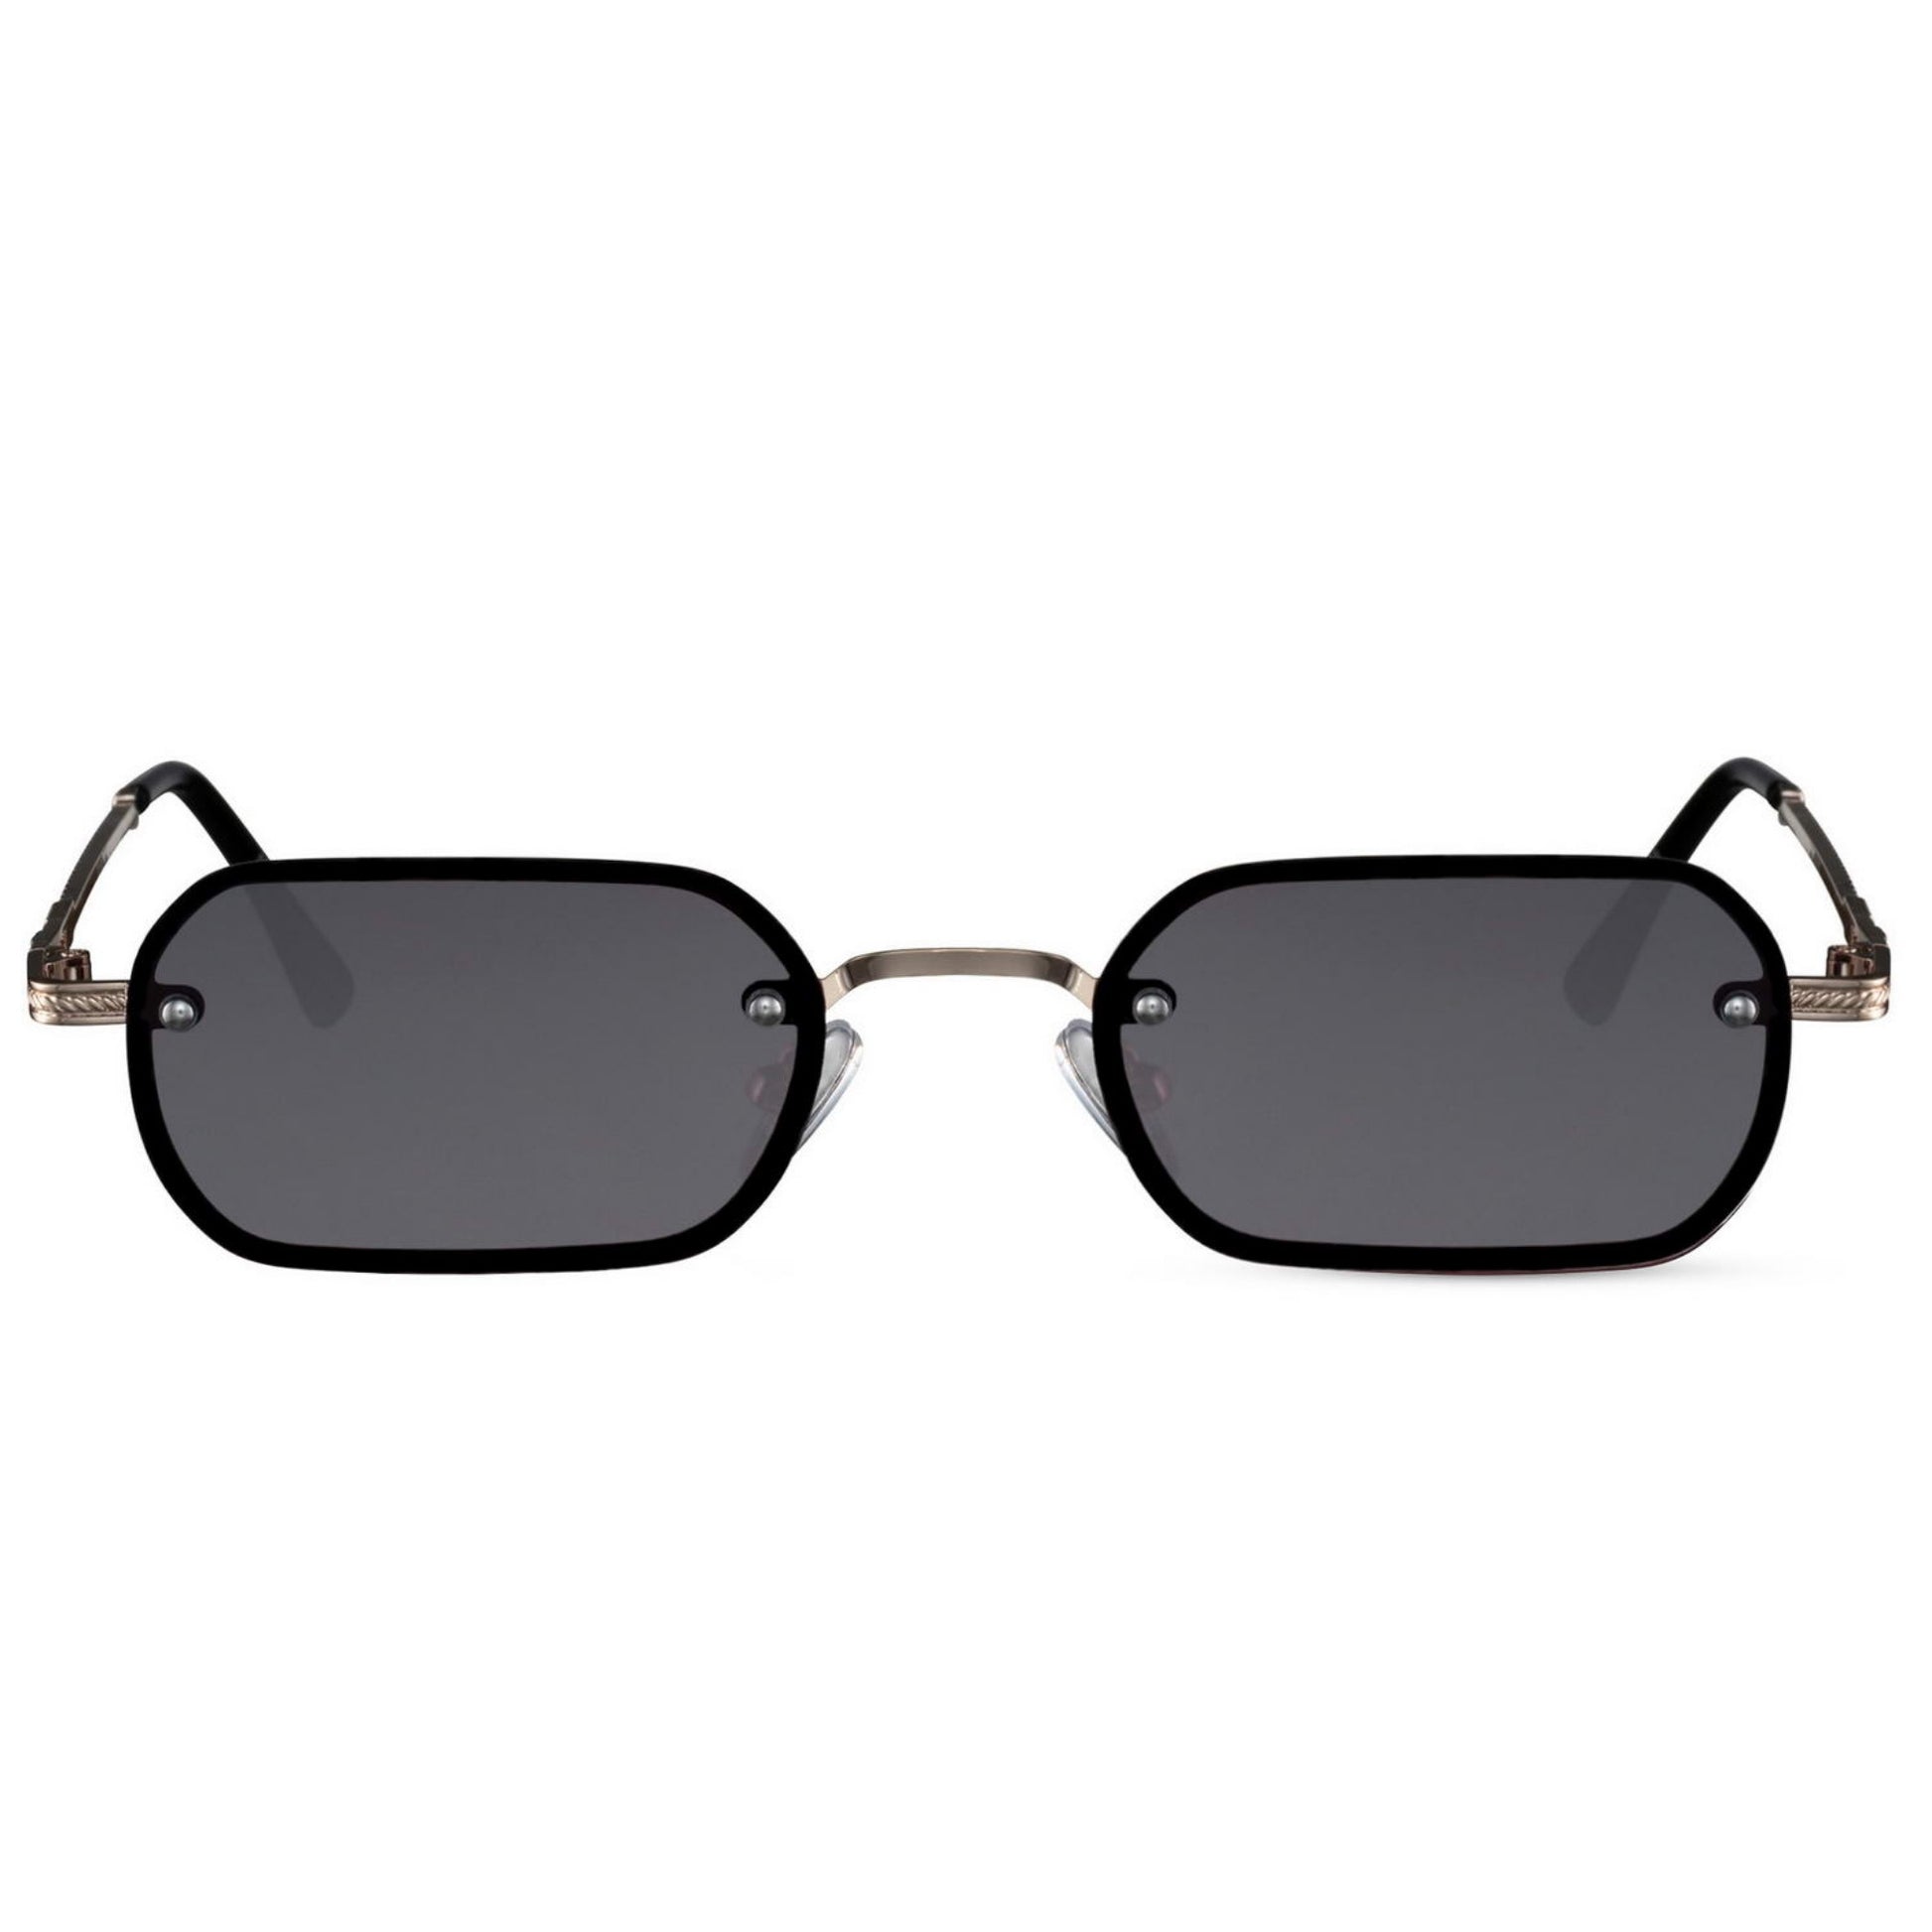 Ορθογώνια Γυαλιά ηλίου New York από την Exposure Sunglasses με προστασία UV400 με μαύρο σκελετό και μαύρο φακό.